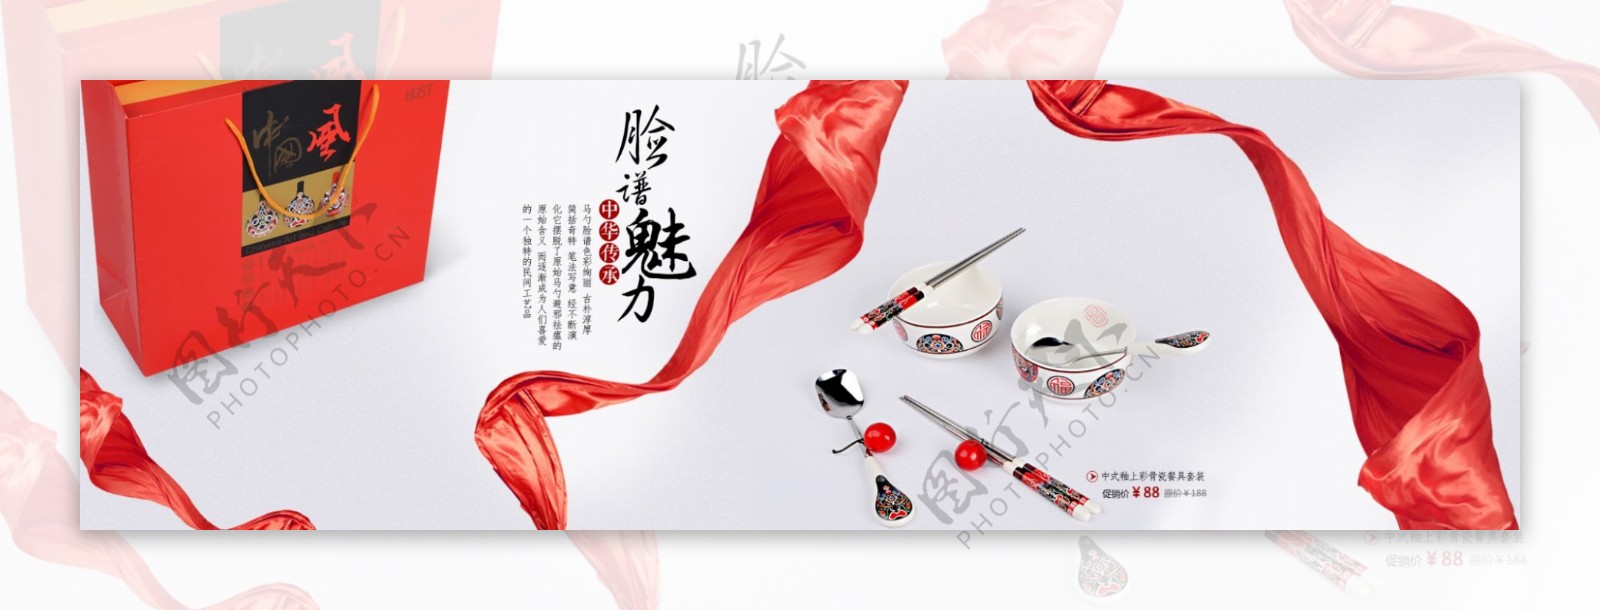 中国风餐具海报